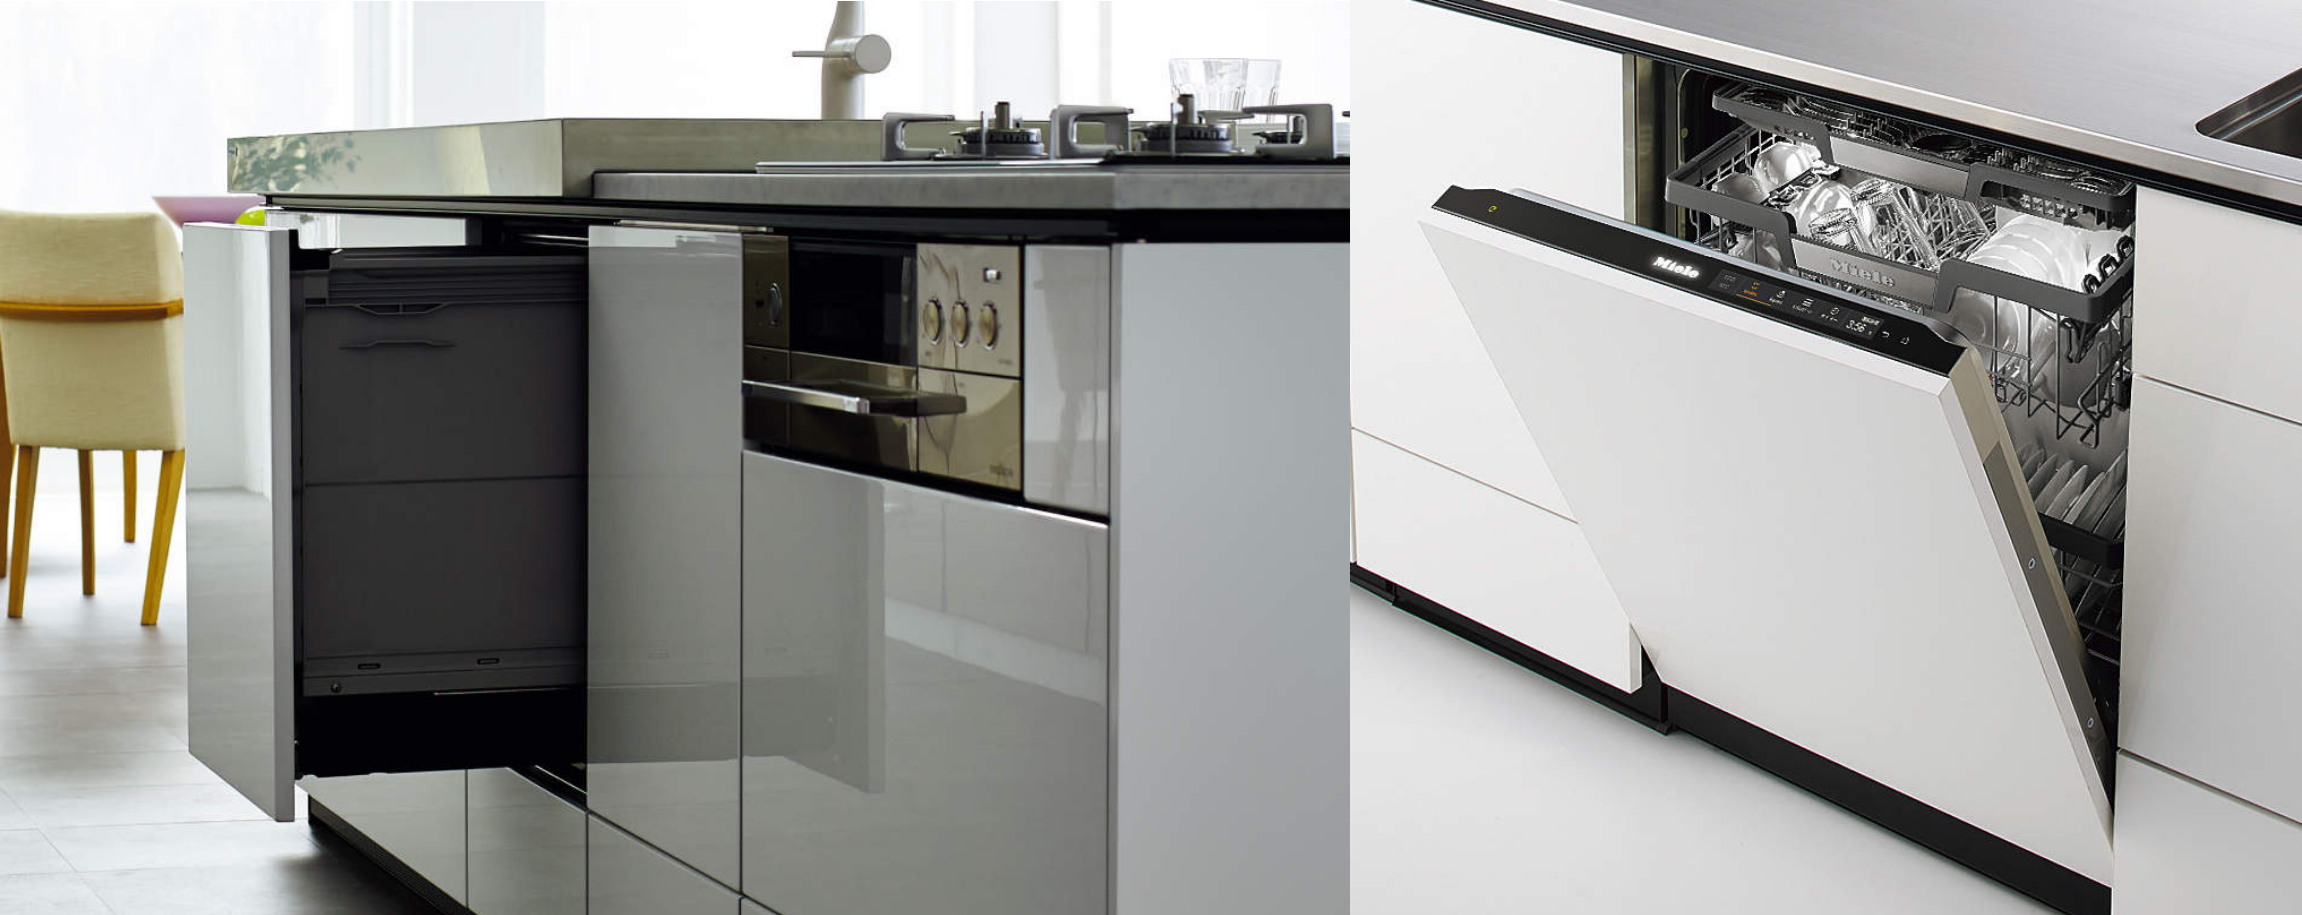 美品システムキッチン クリナップ 食器洗浄機 レンジフード IHコンロ モデルルーム 展示設置品 未通水 2 システムキッチン